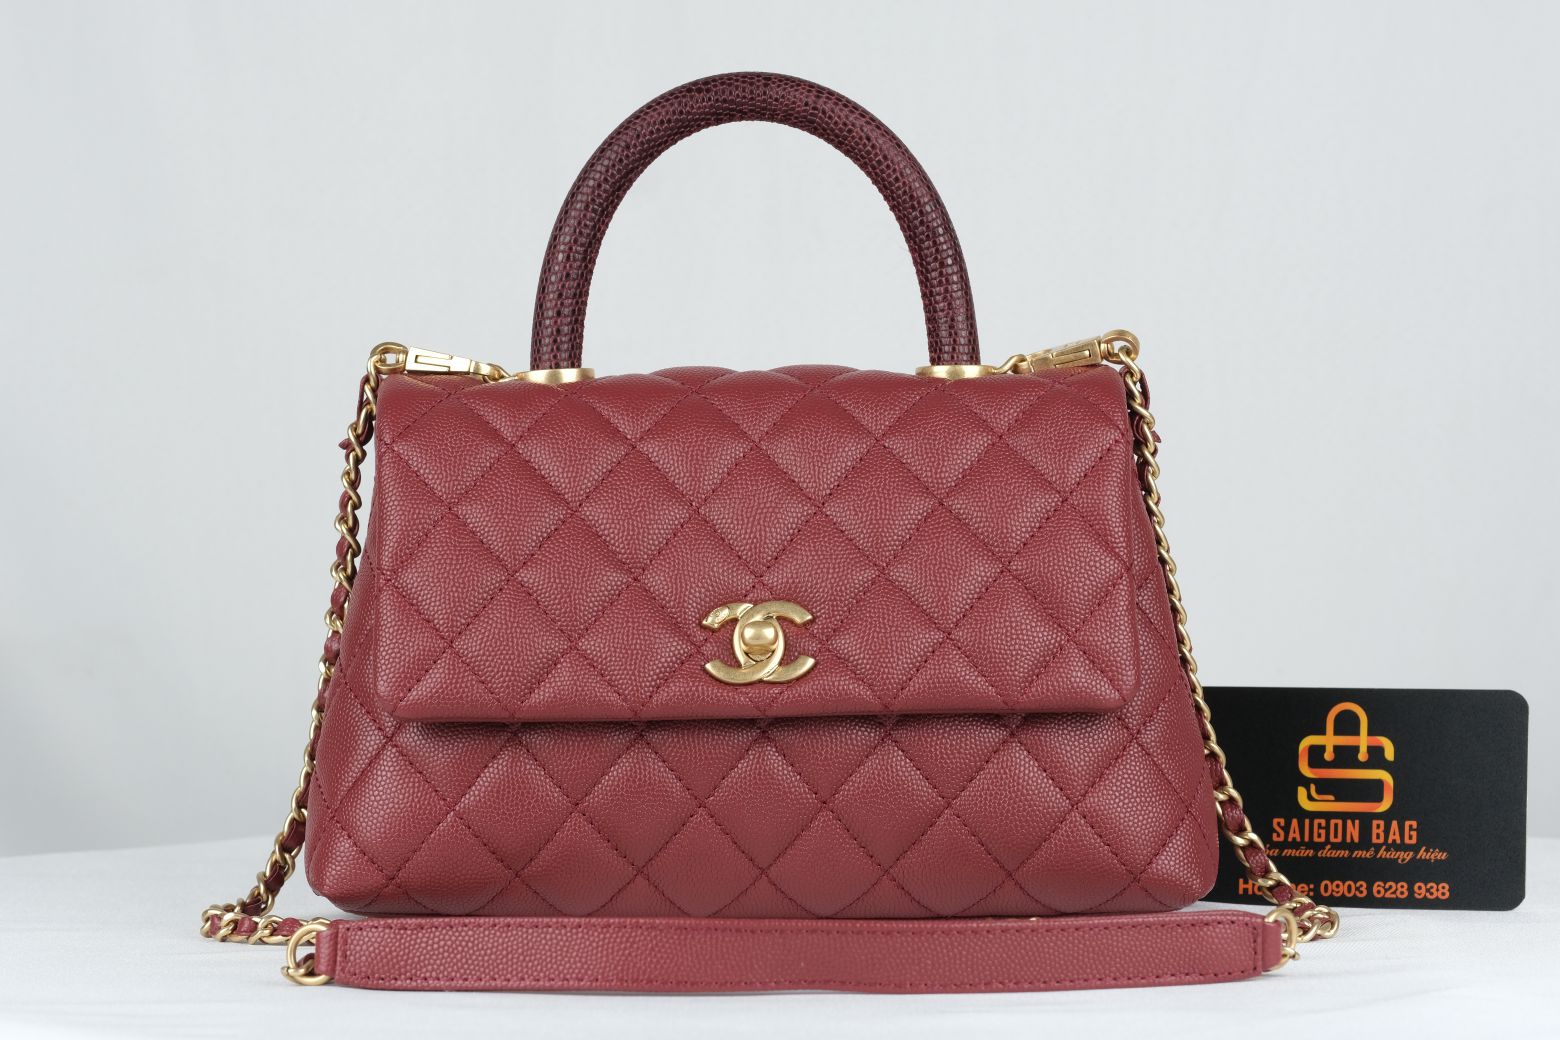 Túi Xách Chanel Coco Mini – Đỏ Mận